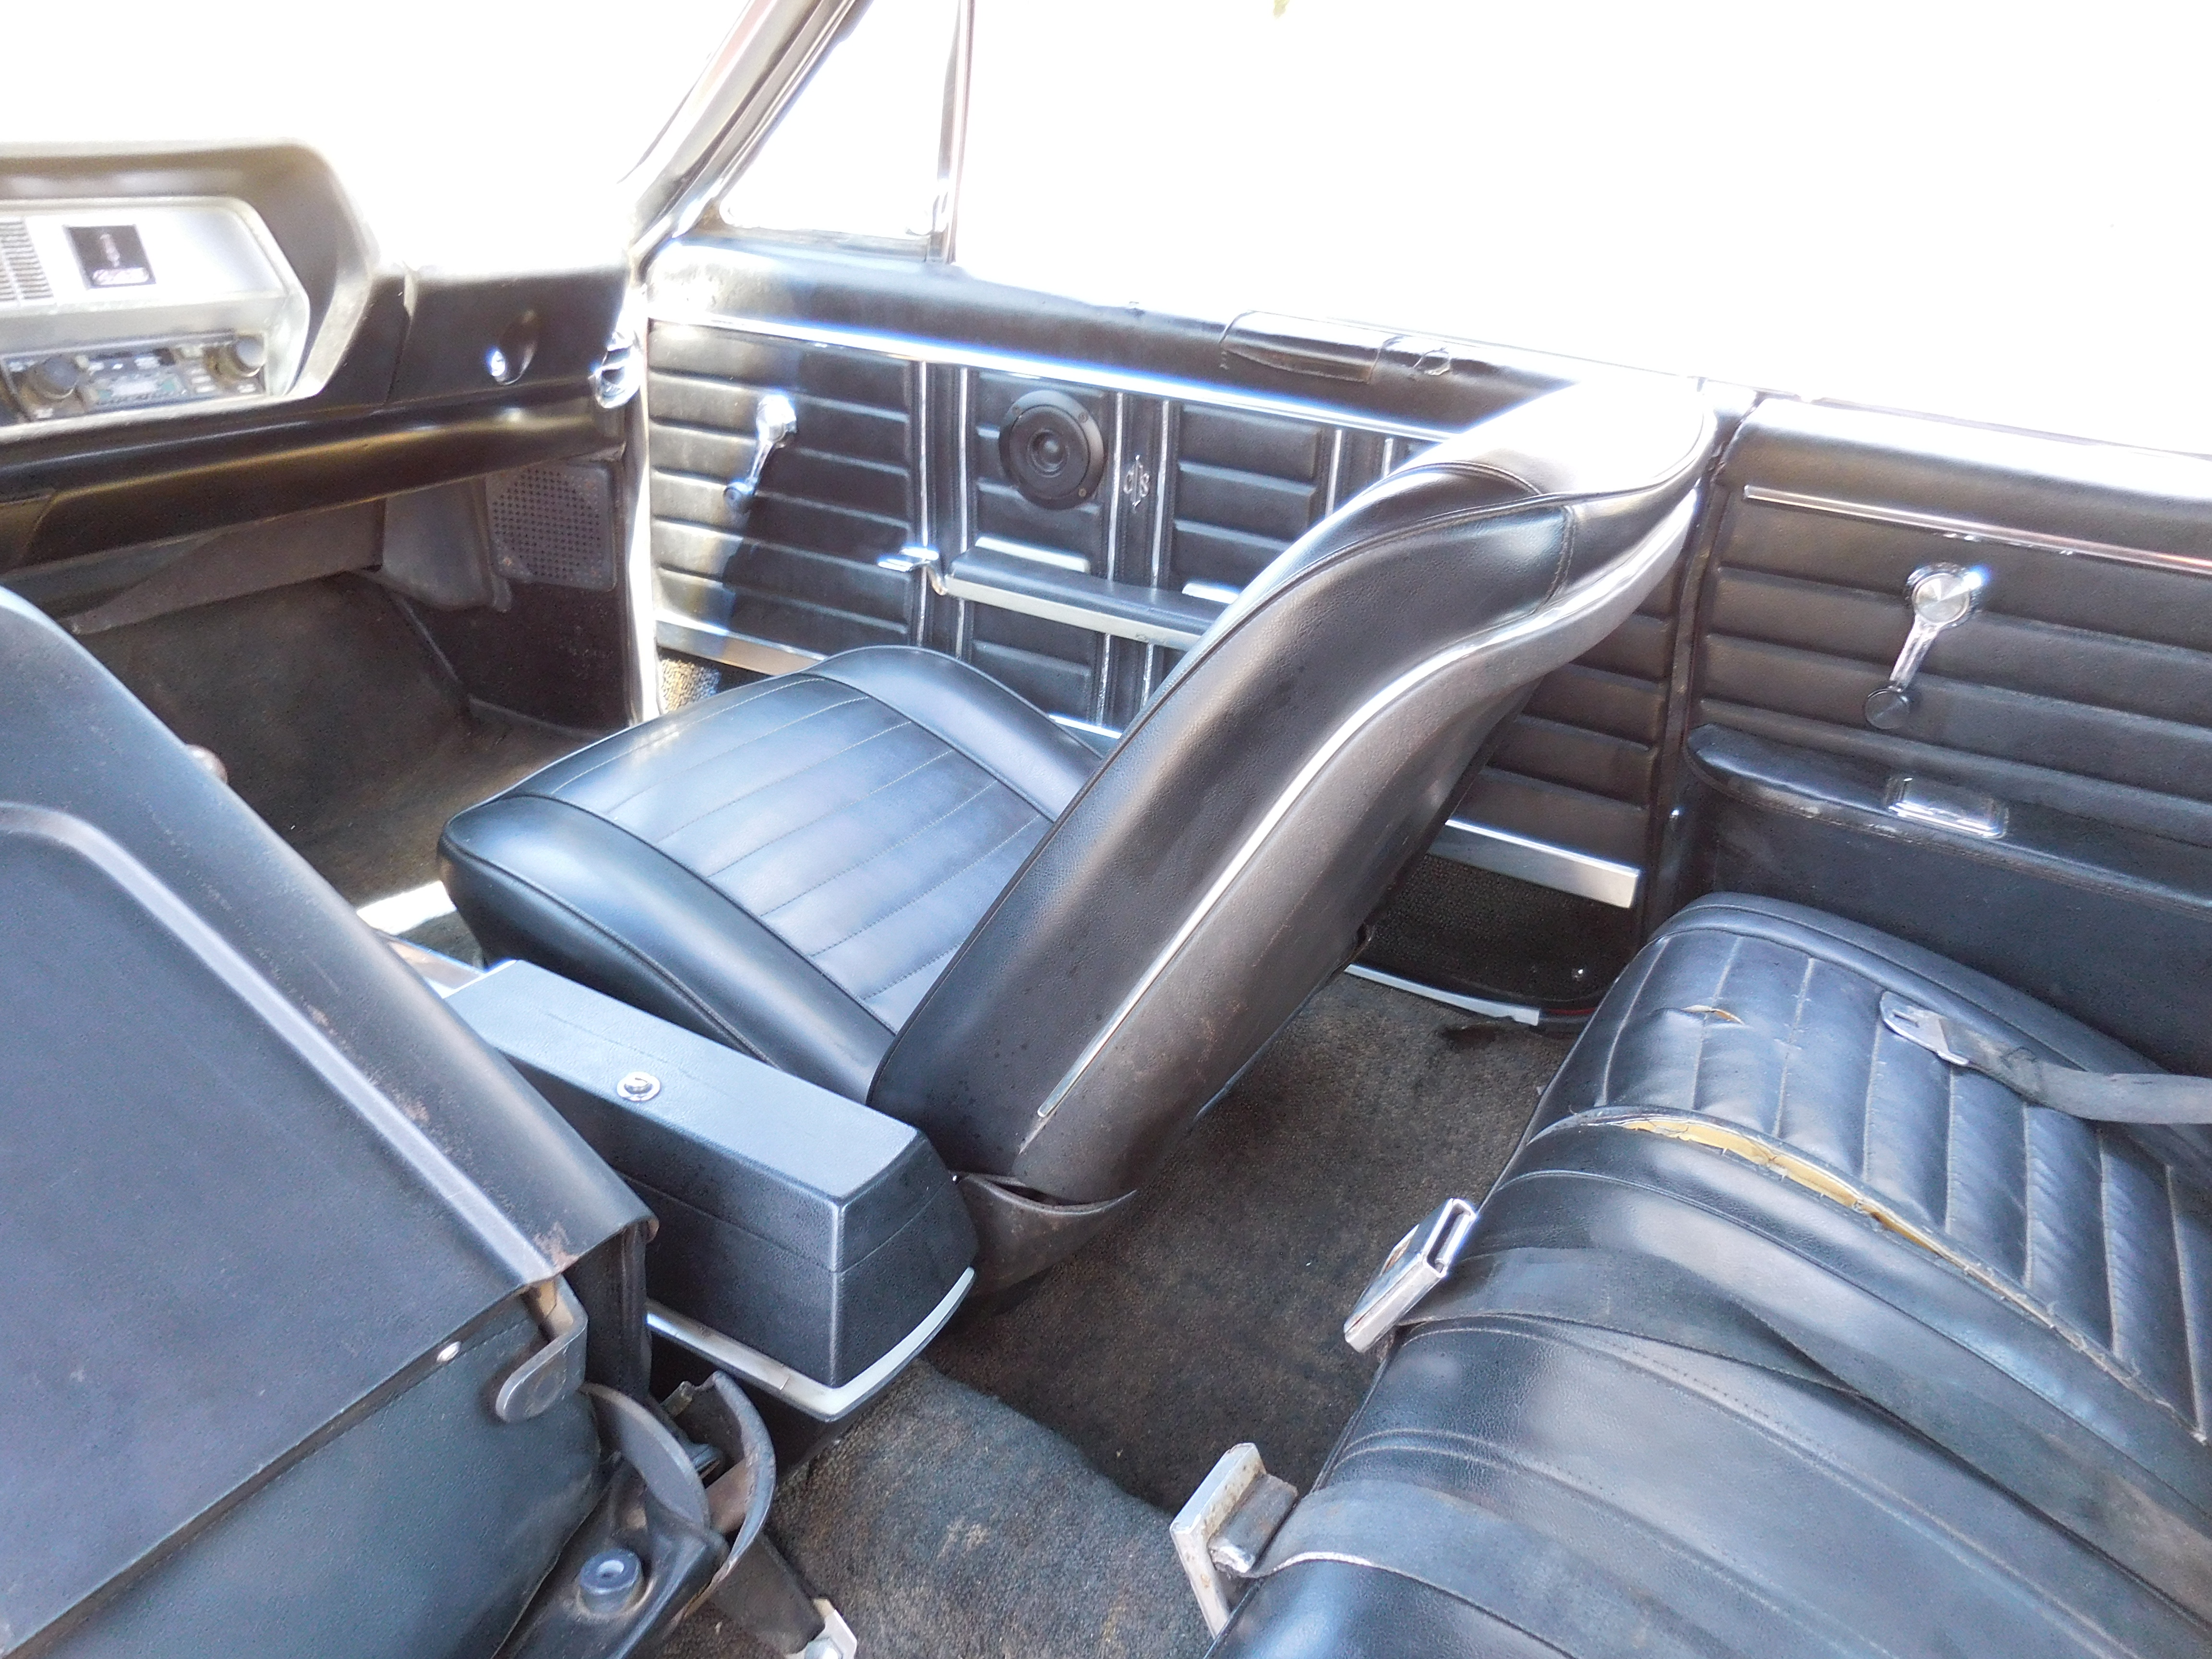 1967, cutlass, 442, 455 12,bolt,th400,bucket seats, center console,